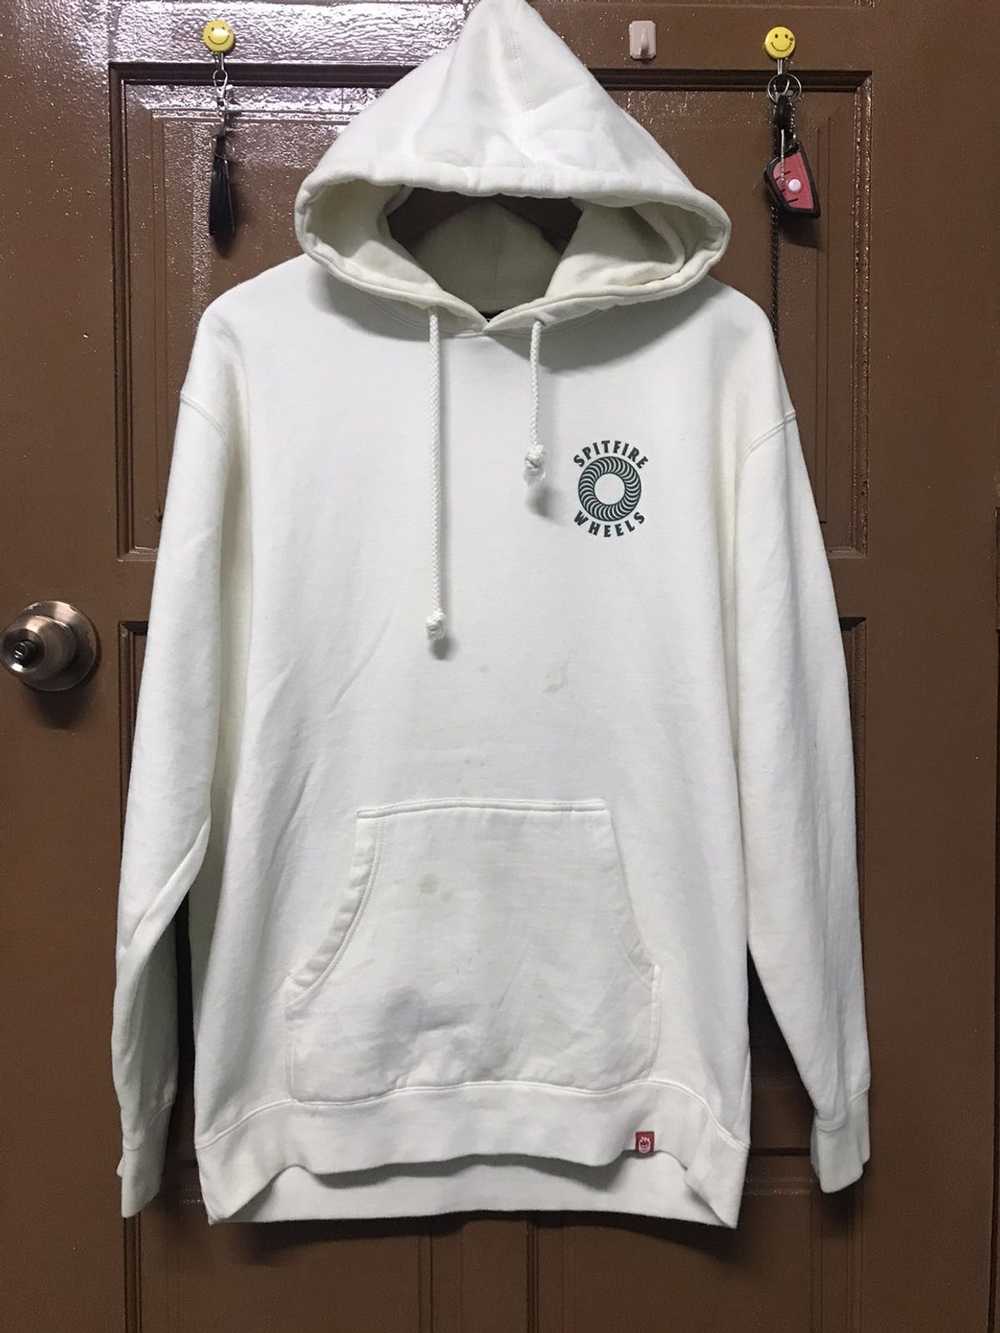 Japanese Brand Spitfire wheels sweatshirt hoodie - image 1